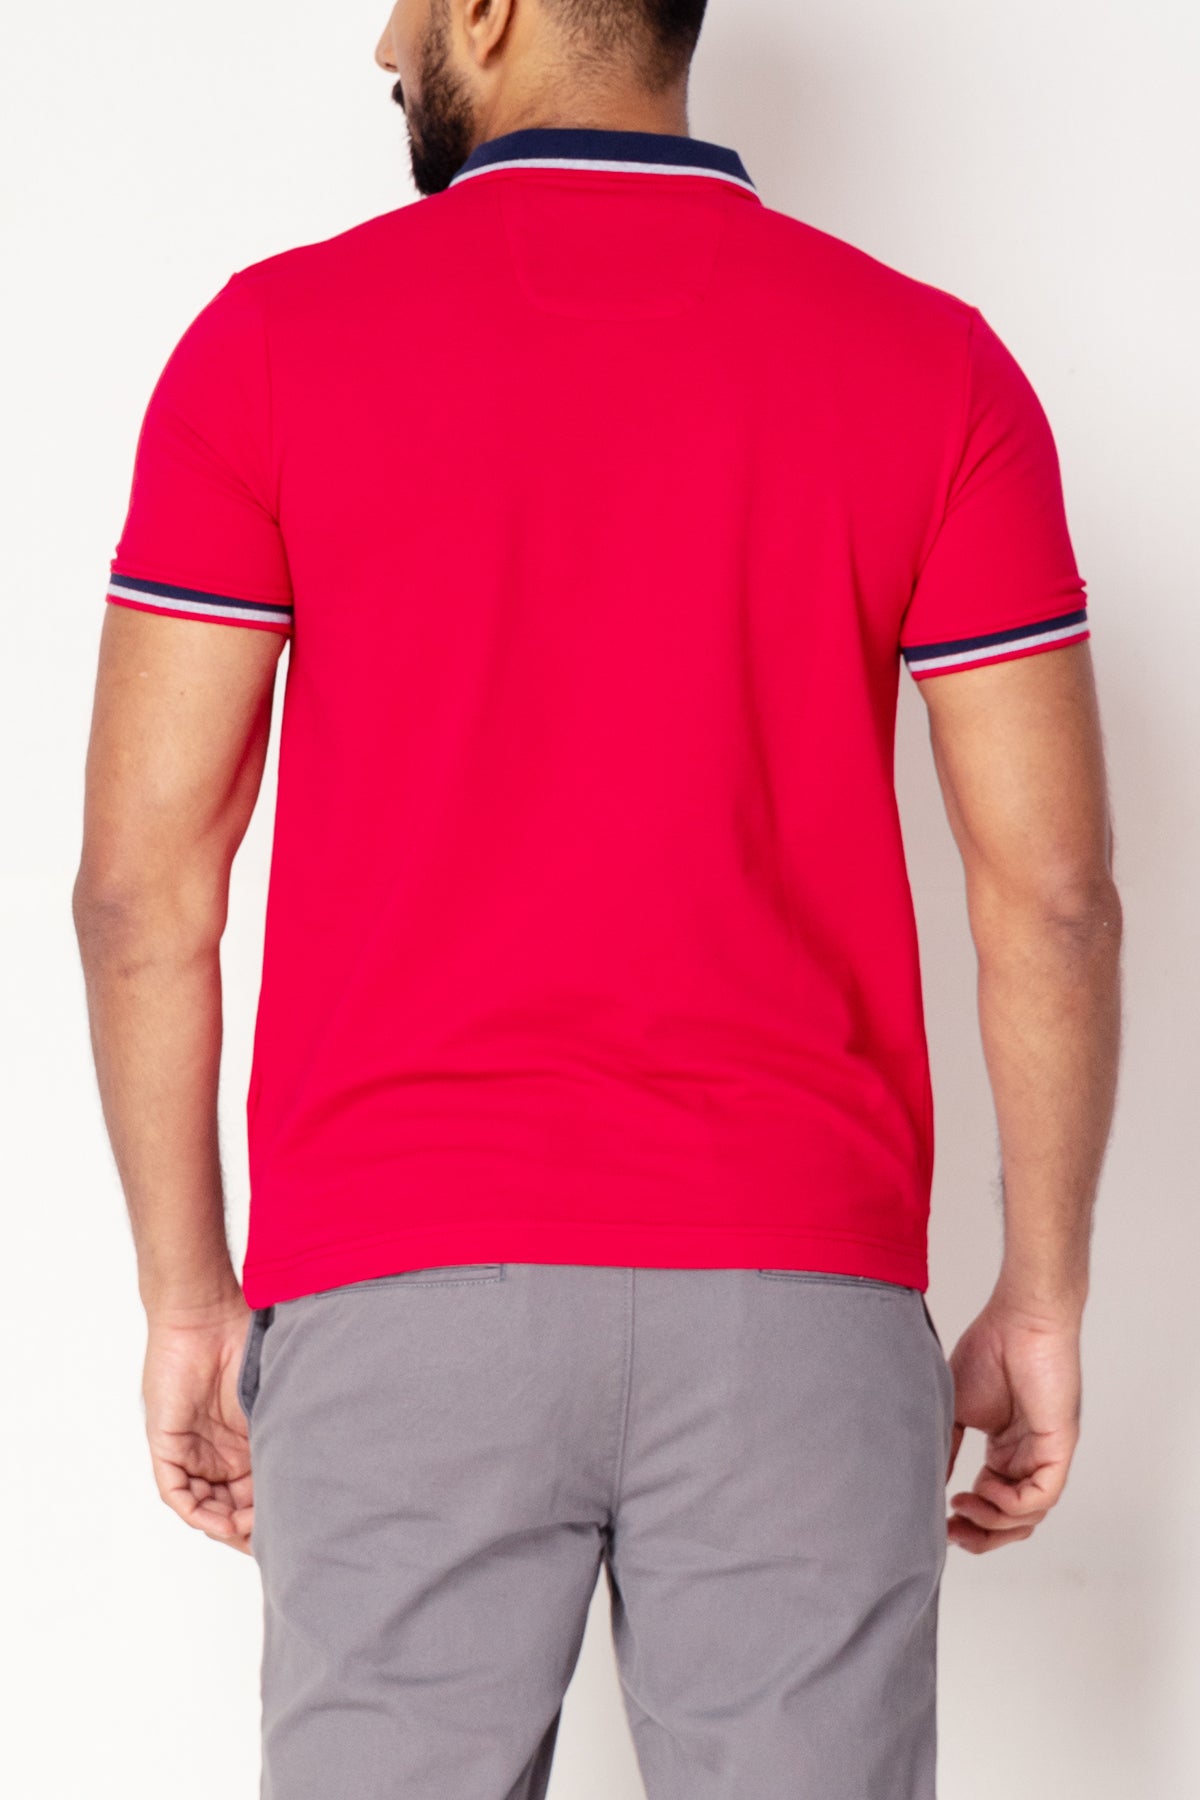 GEN Z Mens Casual Polo T-Shirt